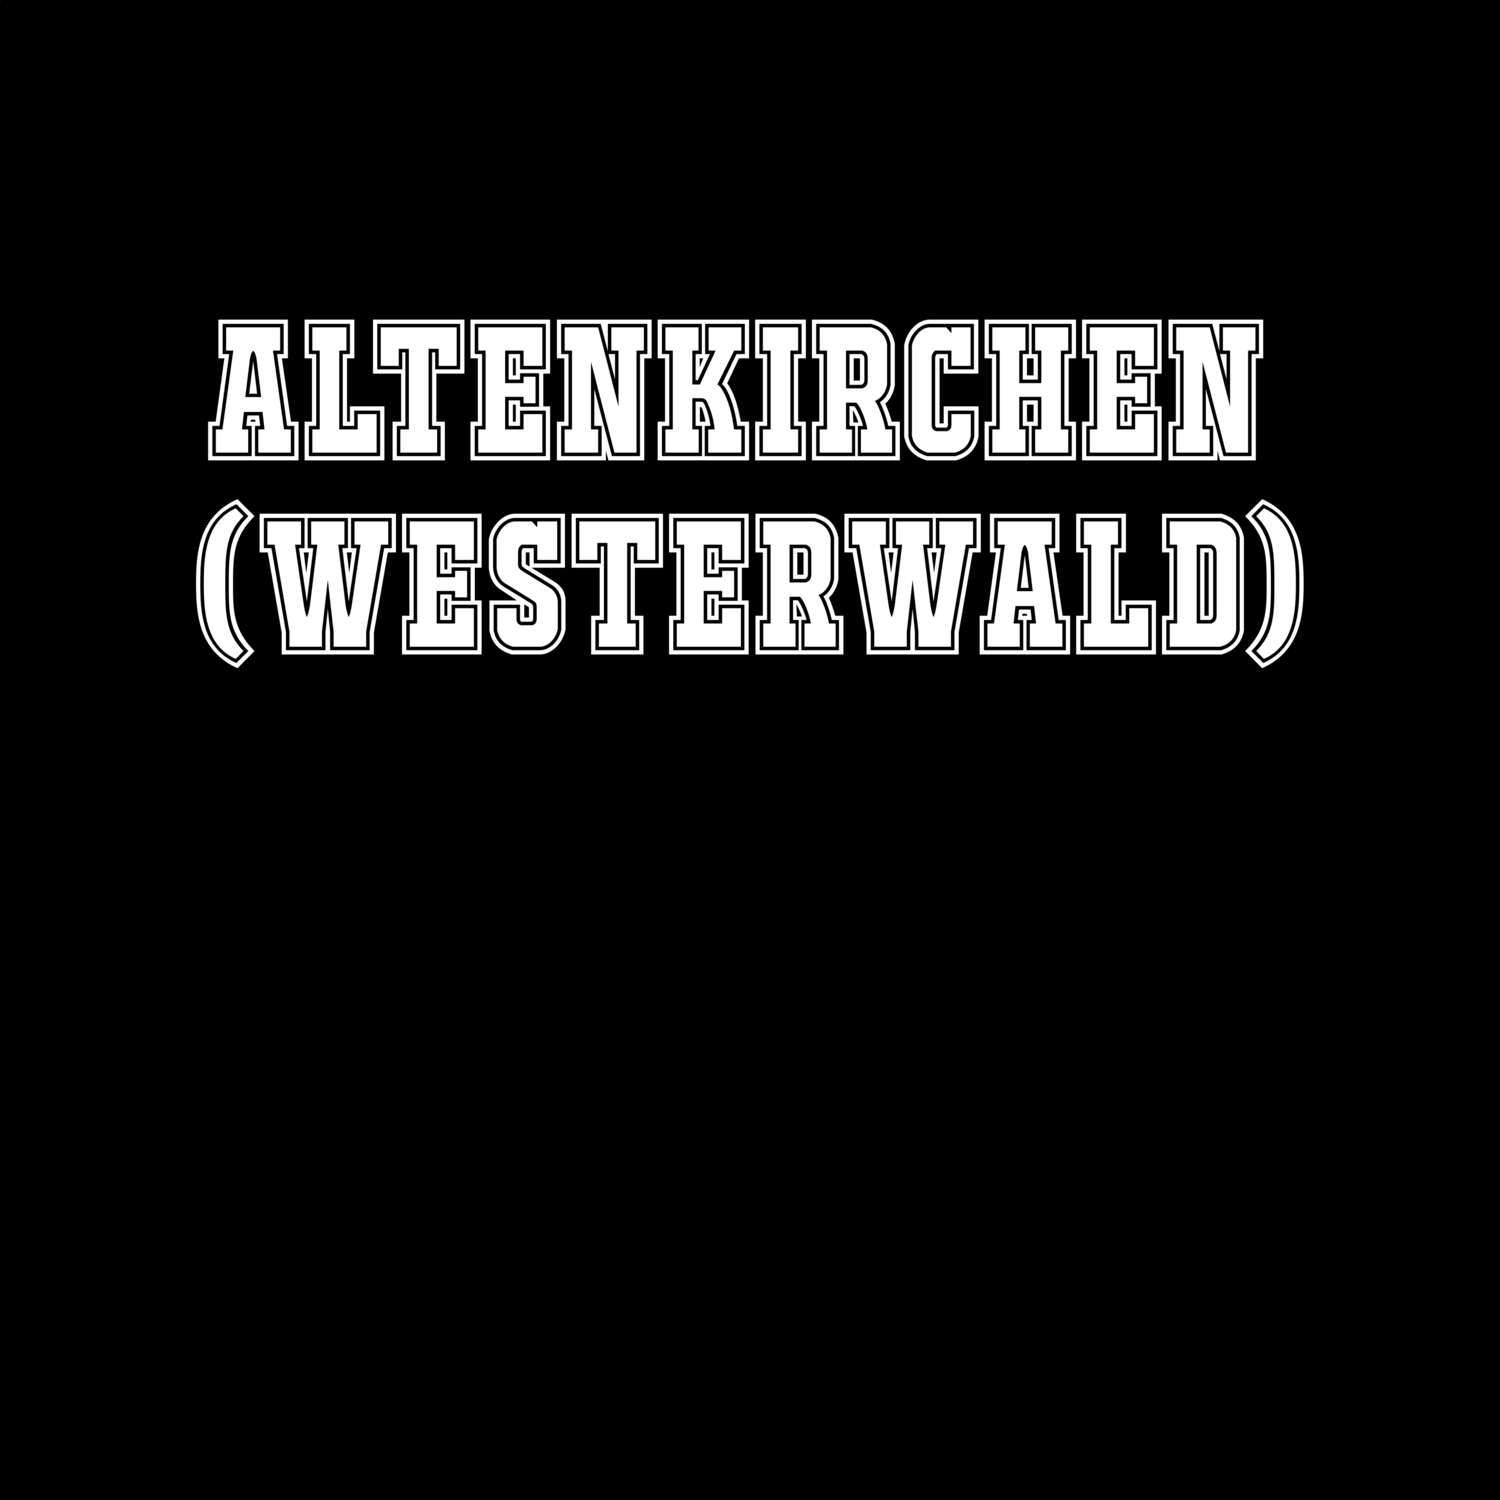 Altenkirchen (Westerwald) T-Shirt »Classic«